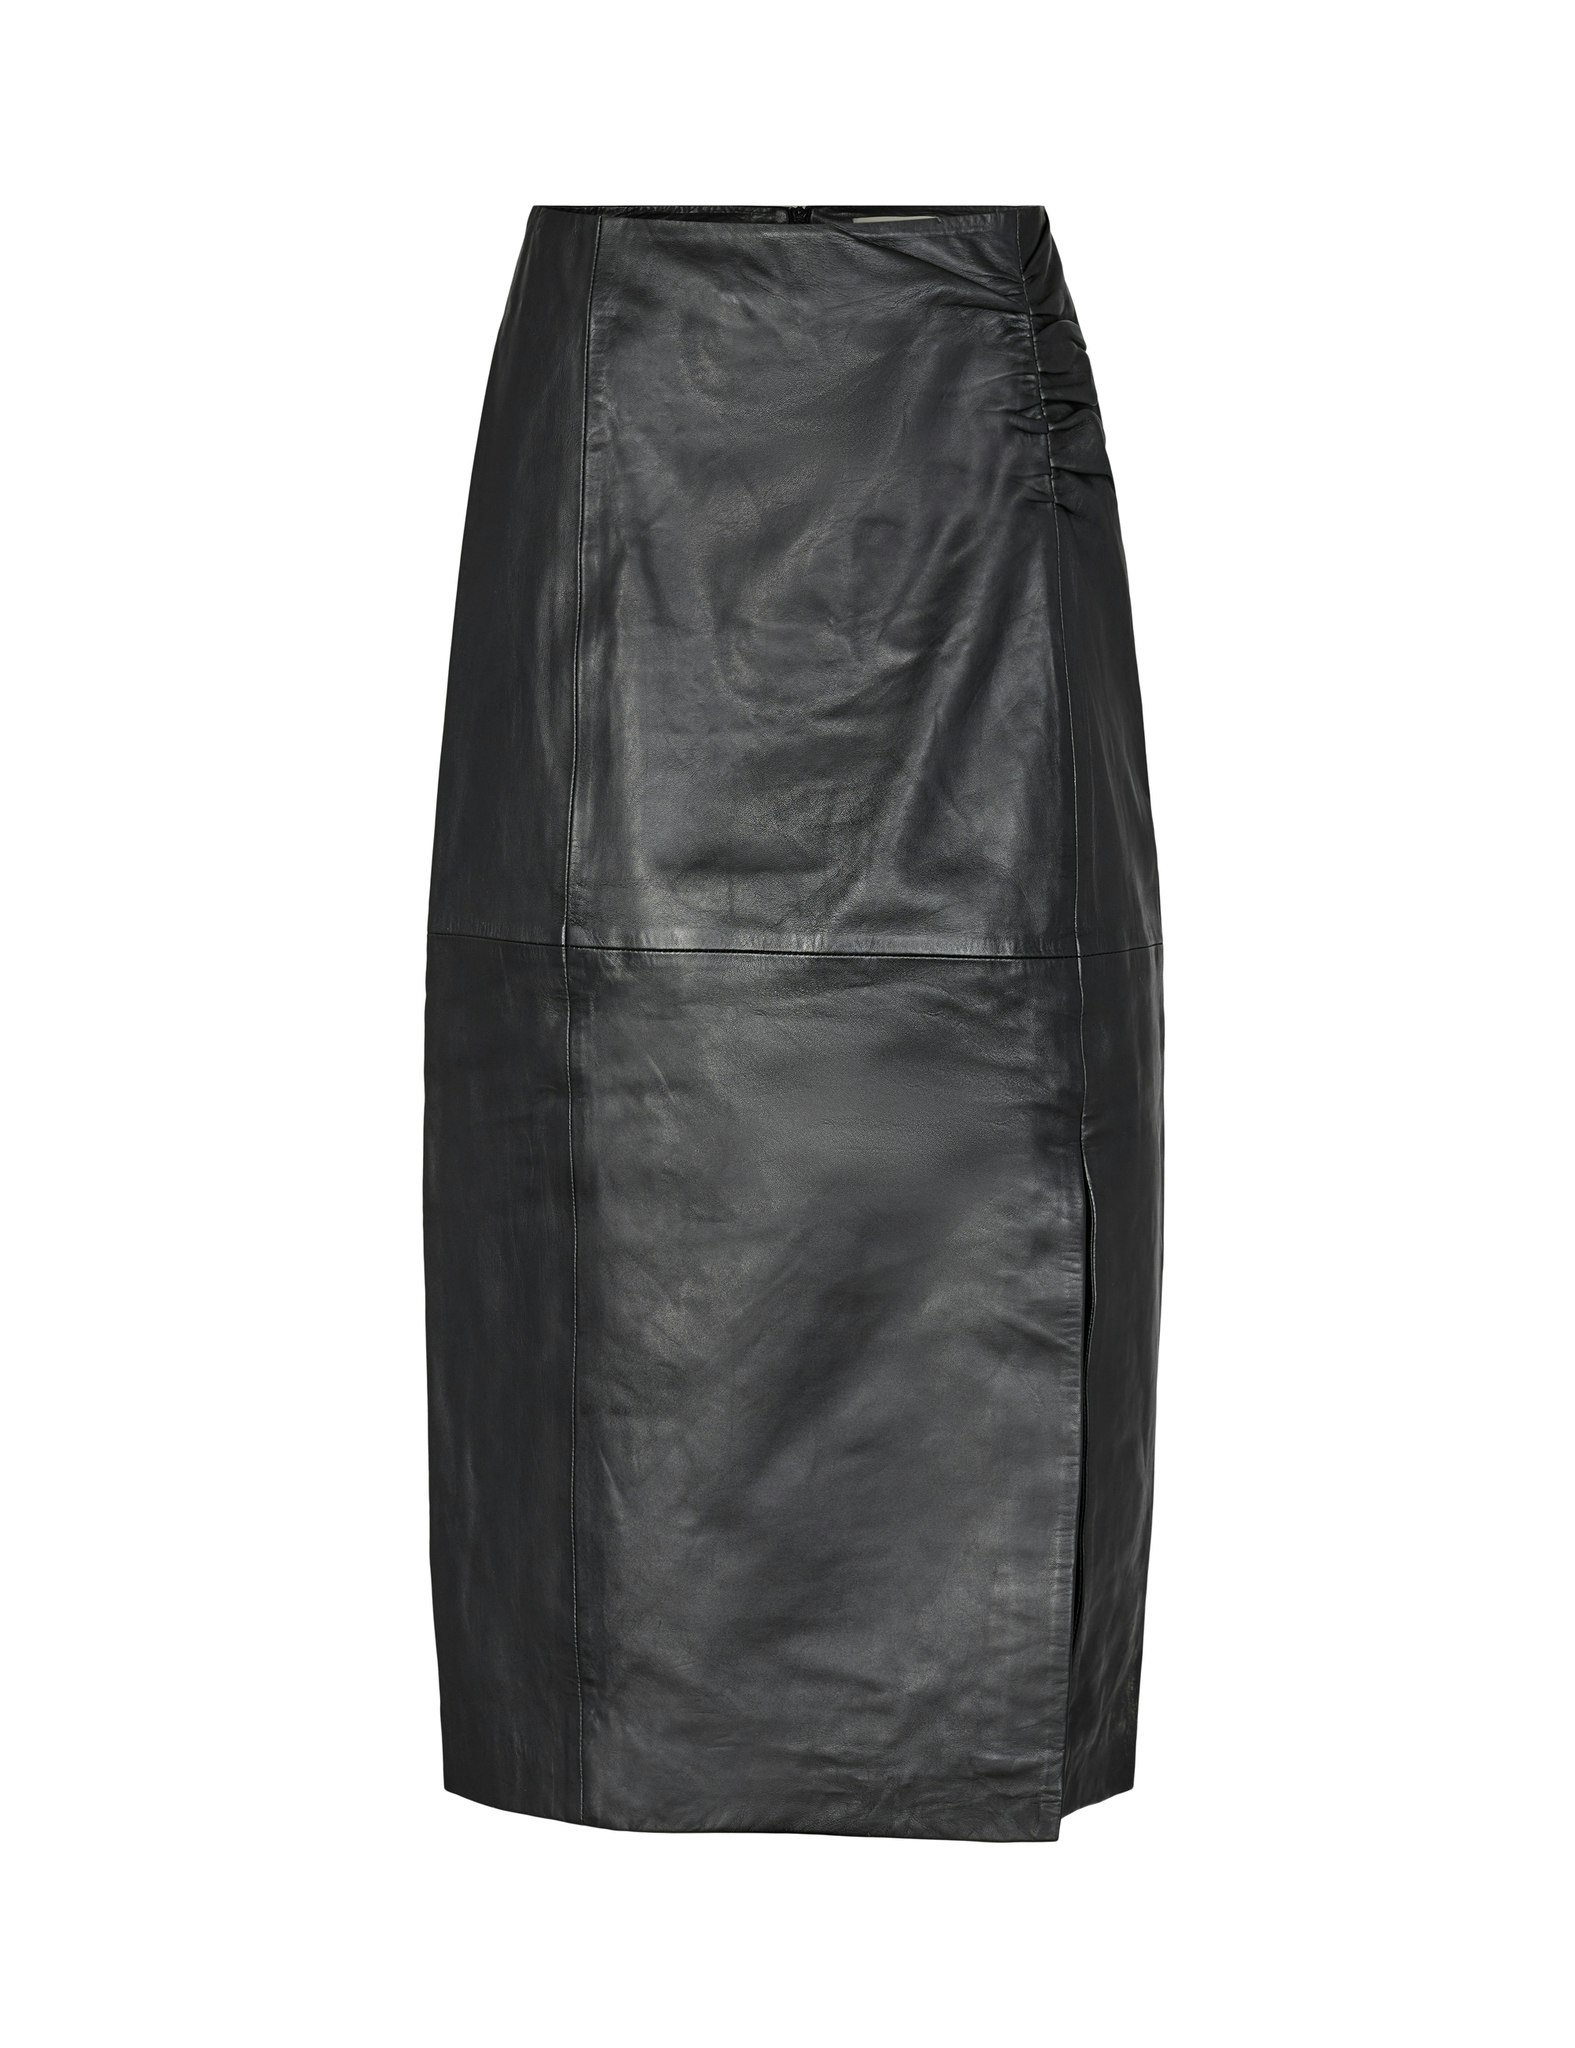 Globa Leather Skirt Black Levete Room